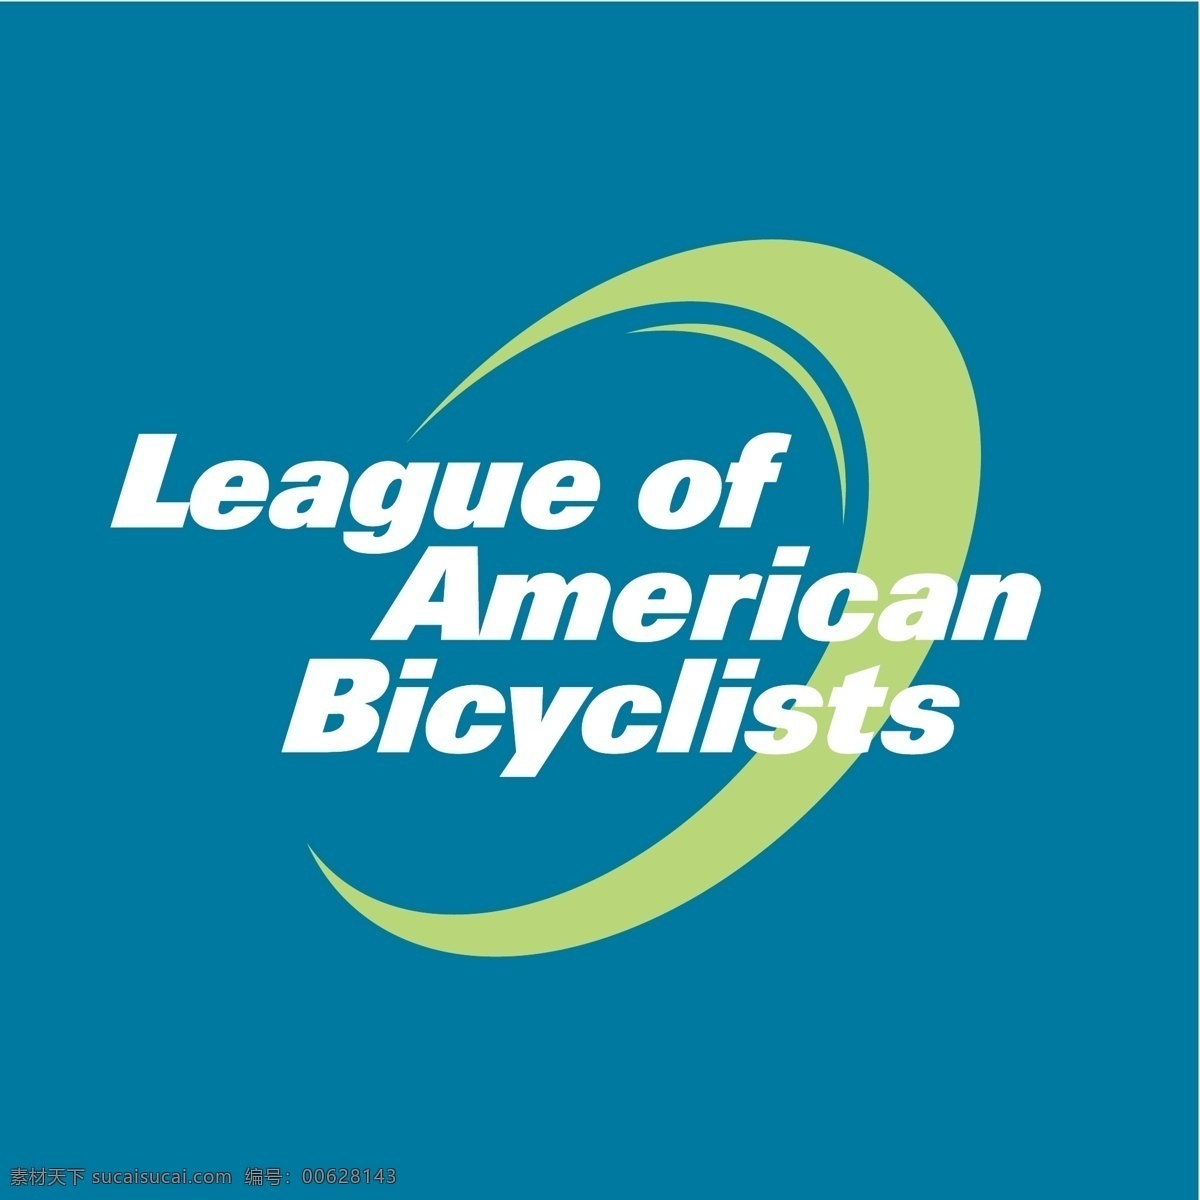 美国 自行车 联盟 骑自行车 联盟的联盟 美国自行车 矢量 向量 队 美国队的标志 足球 美国足球联盟 美国联盟 矢量图 建筑家居